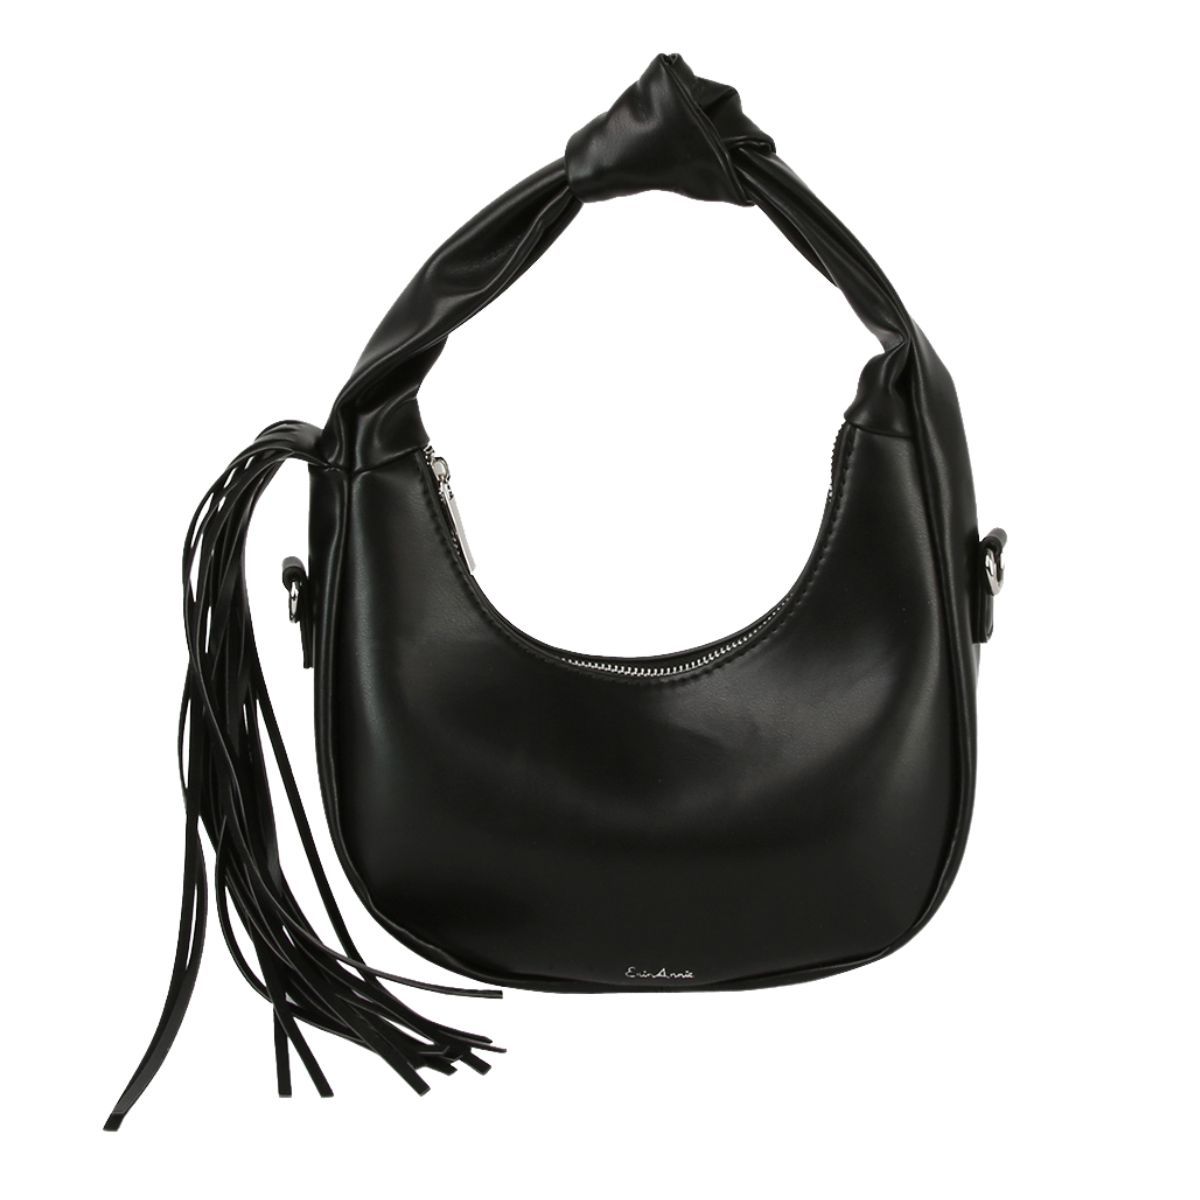 Purse Black Round Fringe Shoulder Bag for Women